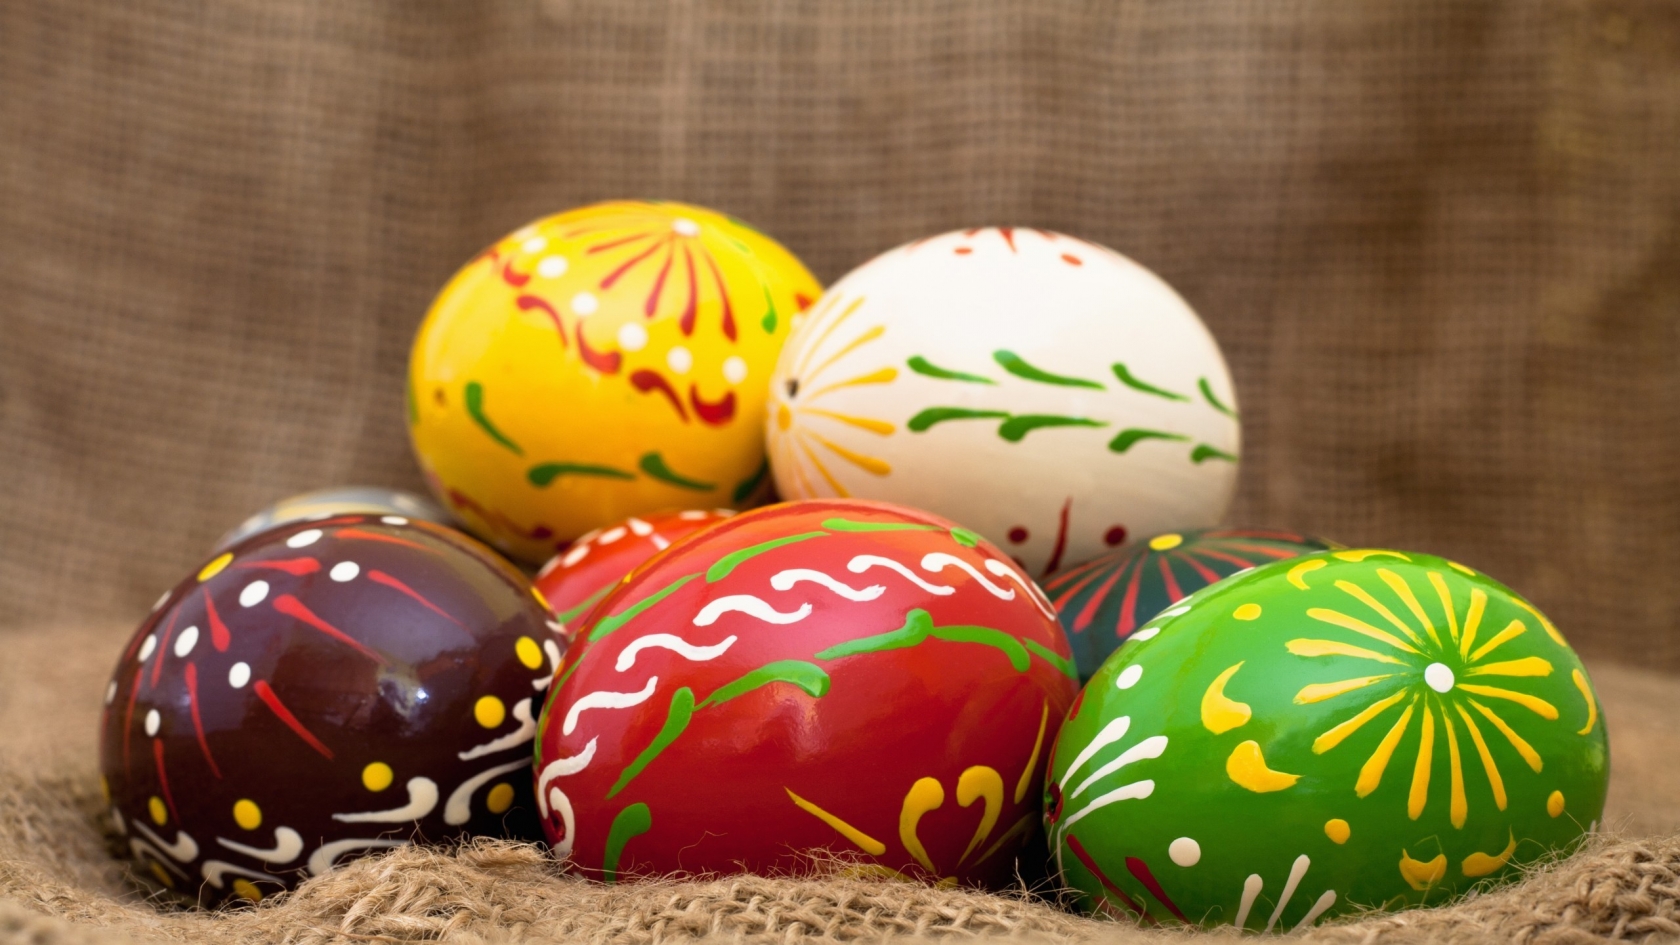 Handmade Easter Eggs for 1680 x 945 HDTV resolution